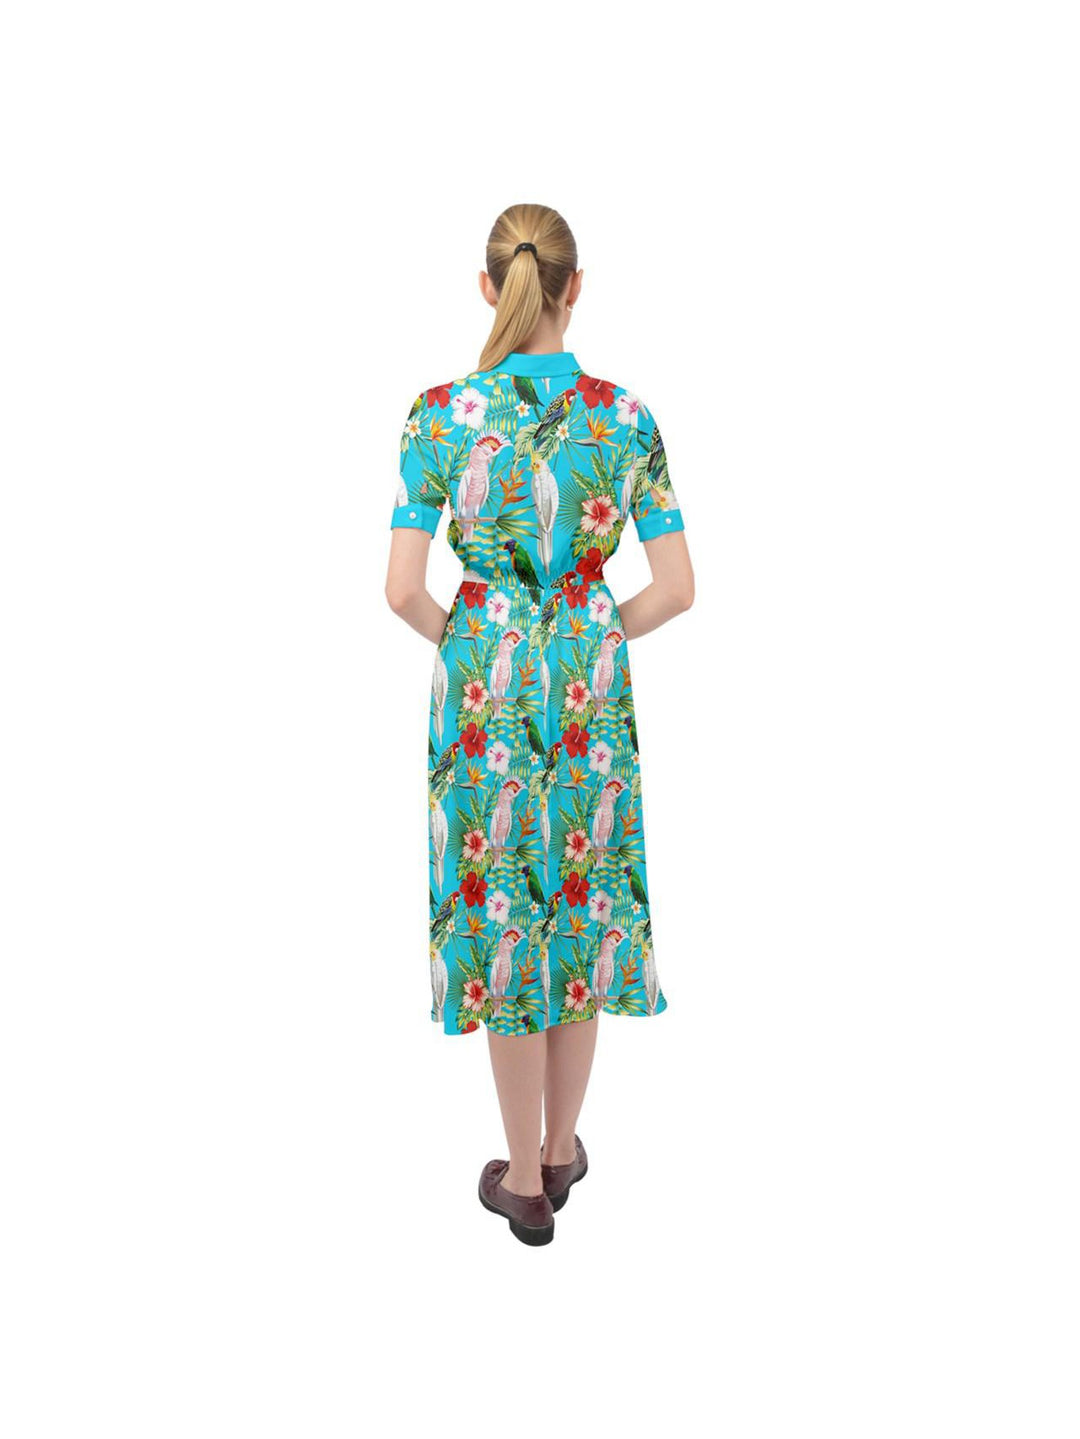 Parrots Ava 1940s Style Vintage Dress